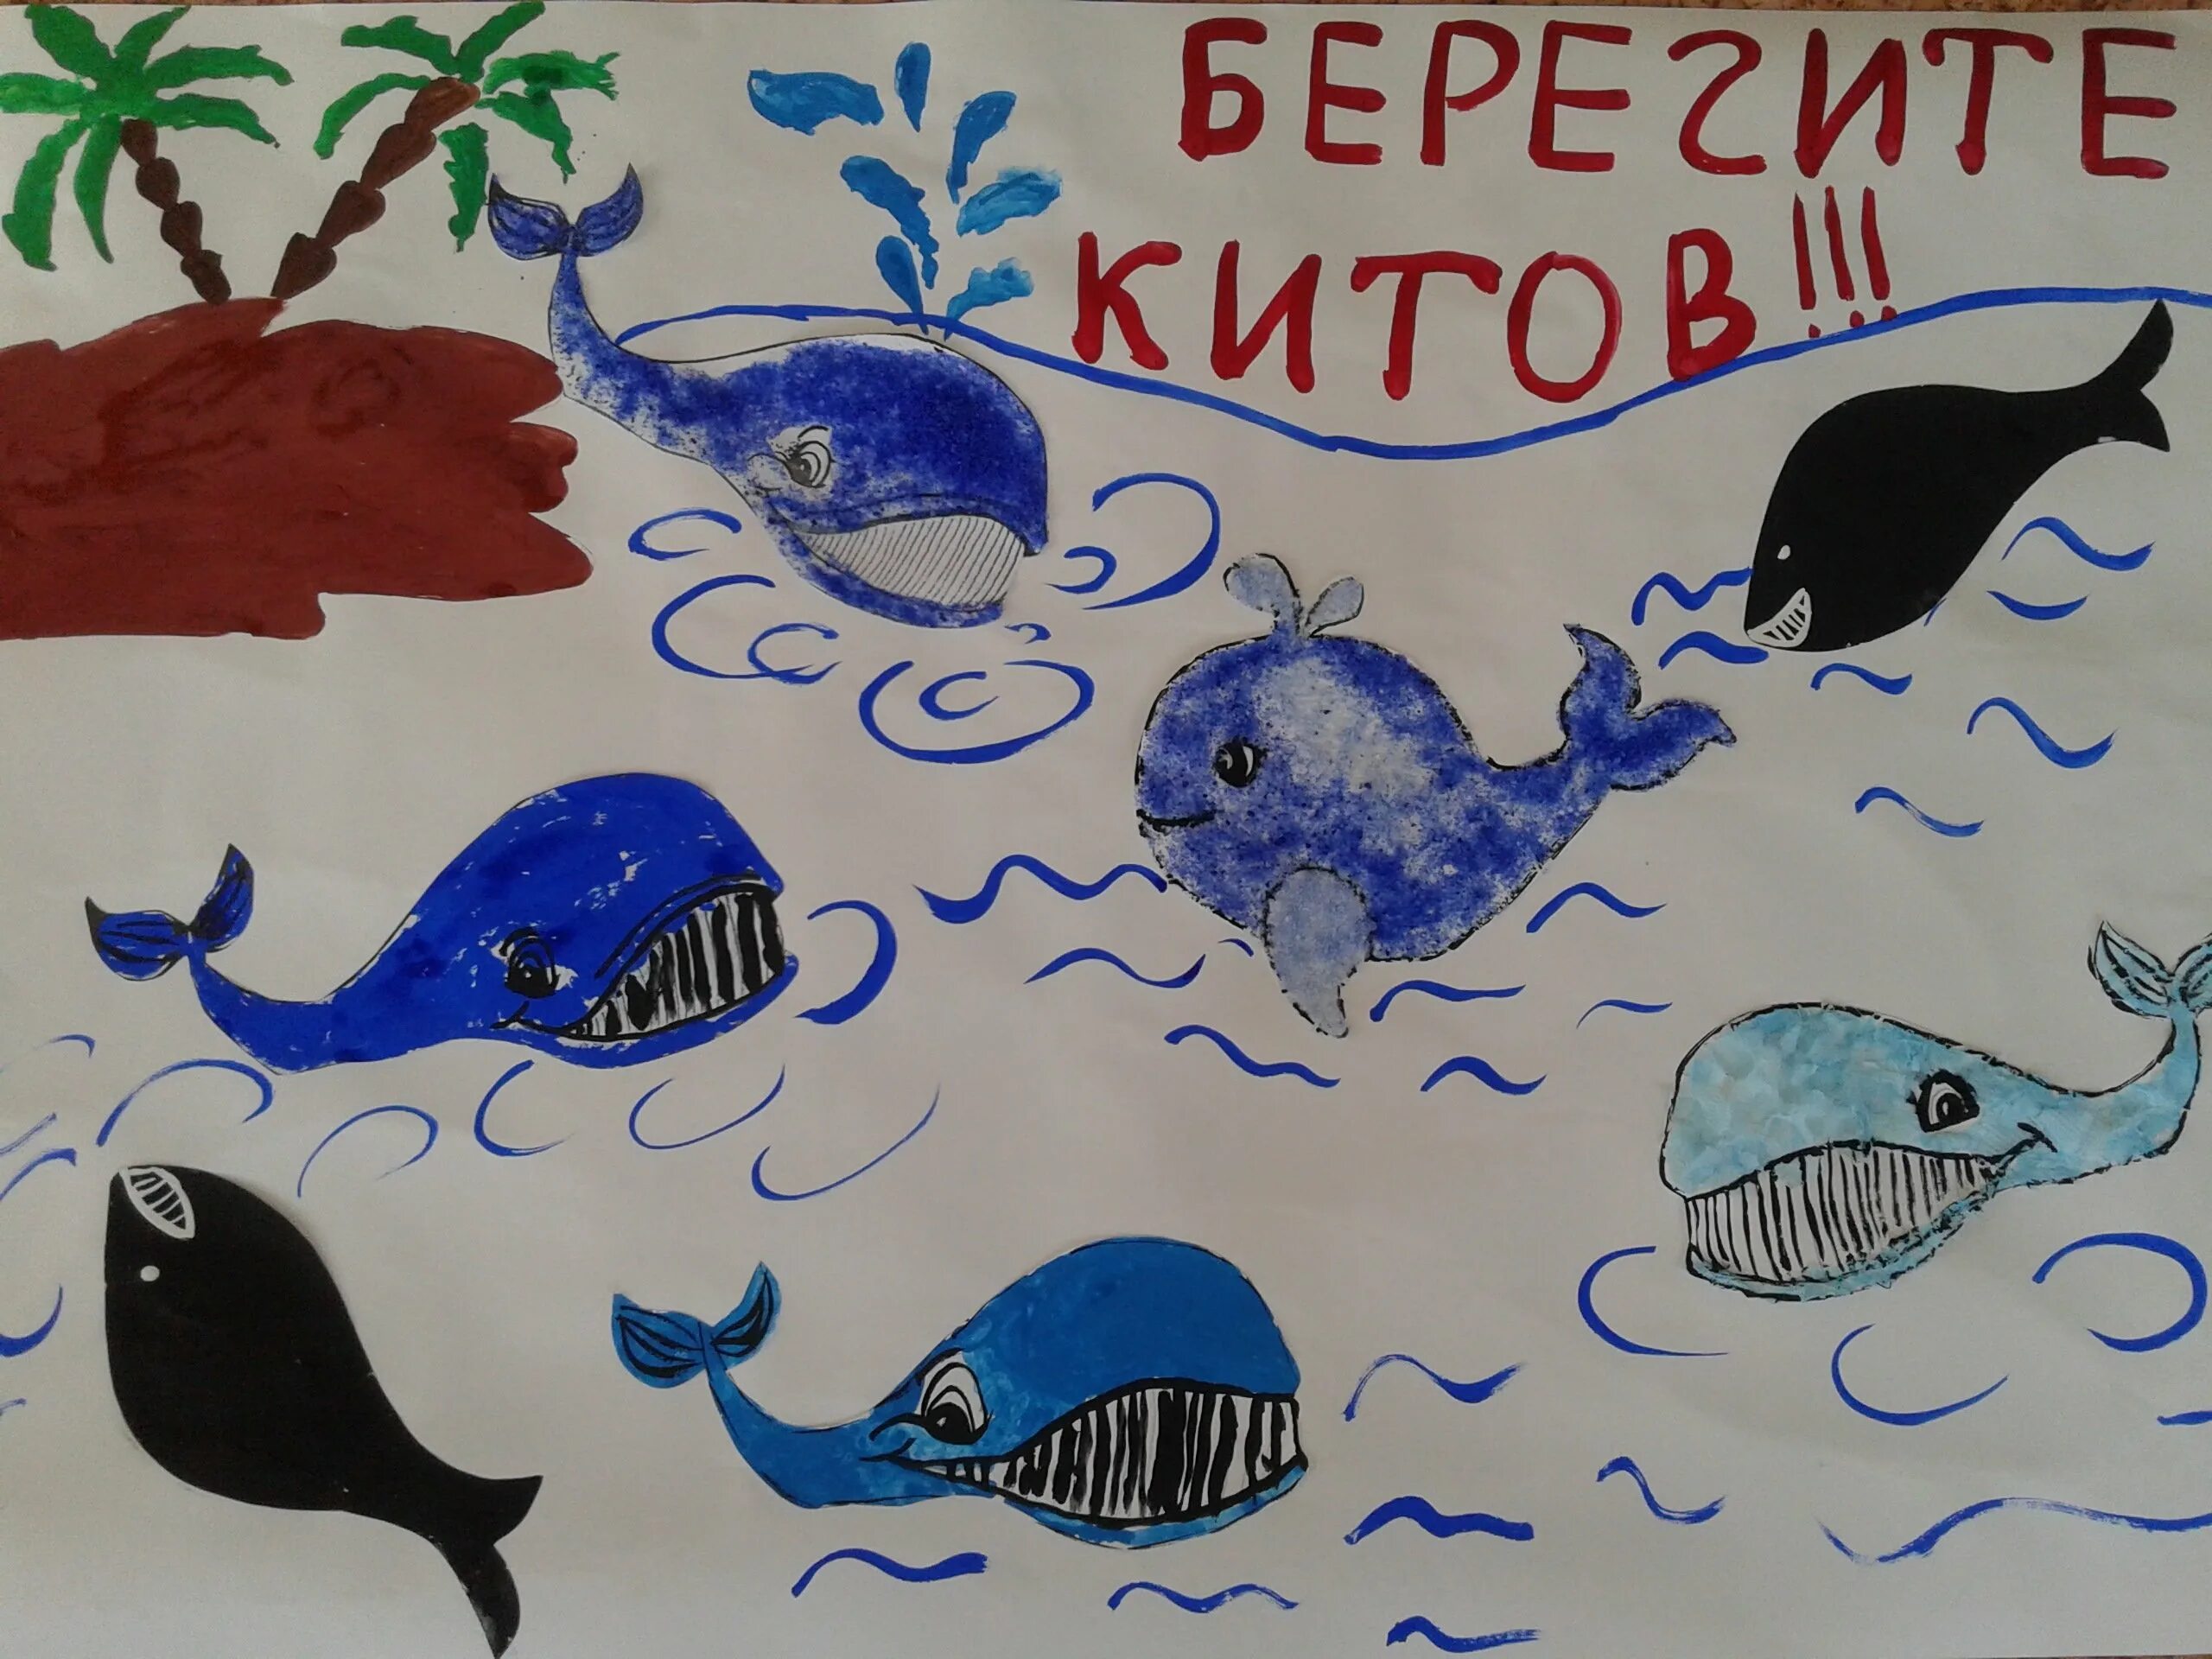 Всемирный день воды аппликация. Всемирный день китов. Всемирный день защиты морских млекопитающих (день кита). Всемирный день китов 19 февраля. Плакат в защиту китов.